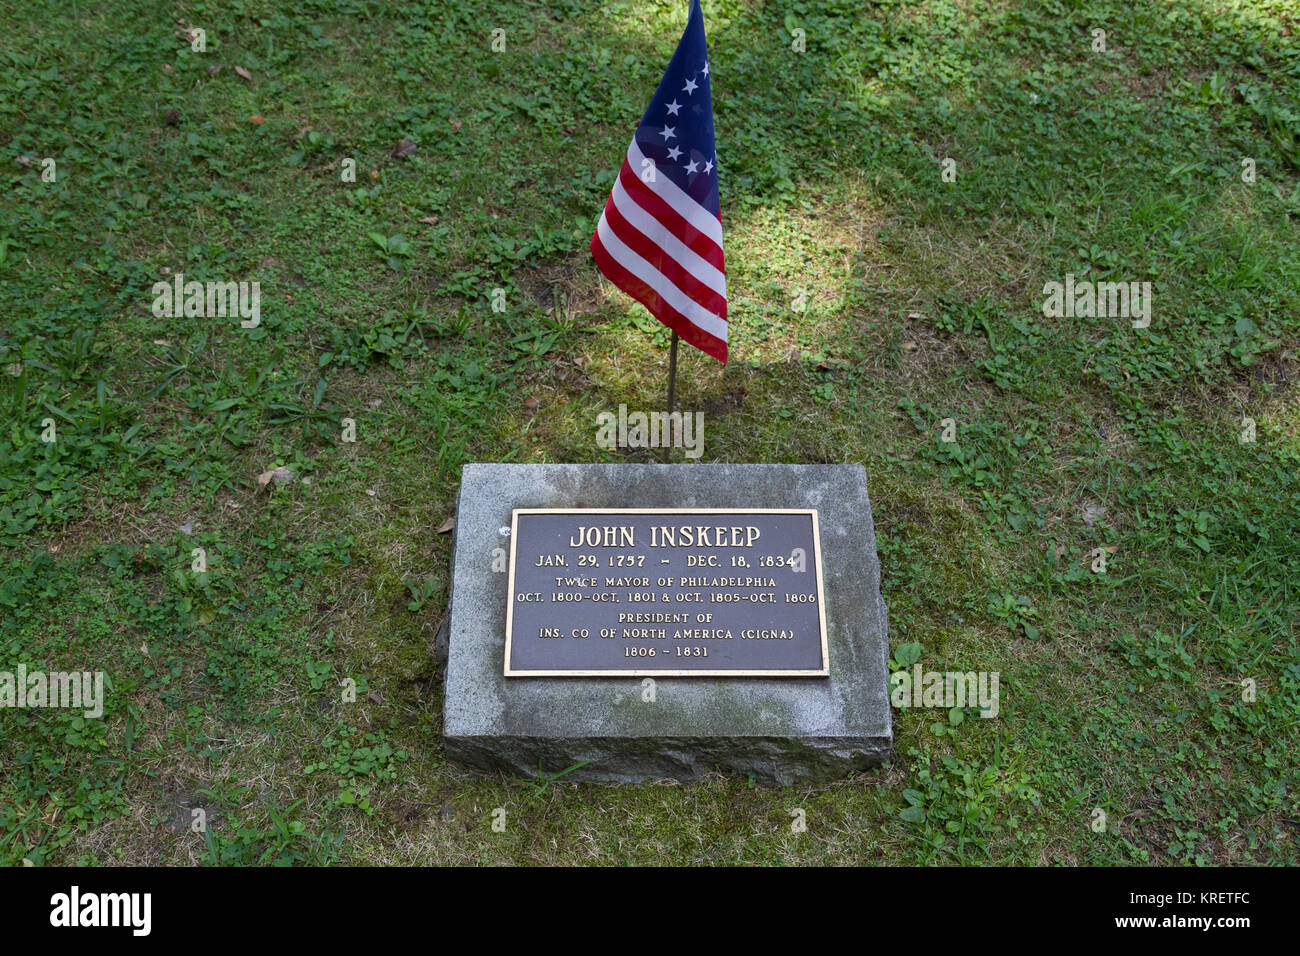 La tombe de John Inskeep, deux fois maire de Philadelphie, dans le cimetière de Christ Church, Philadelphie, Pennsylvanie, États-Unis. Banque D'Images